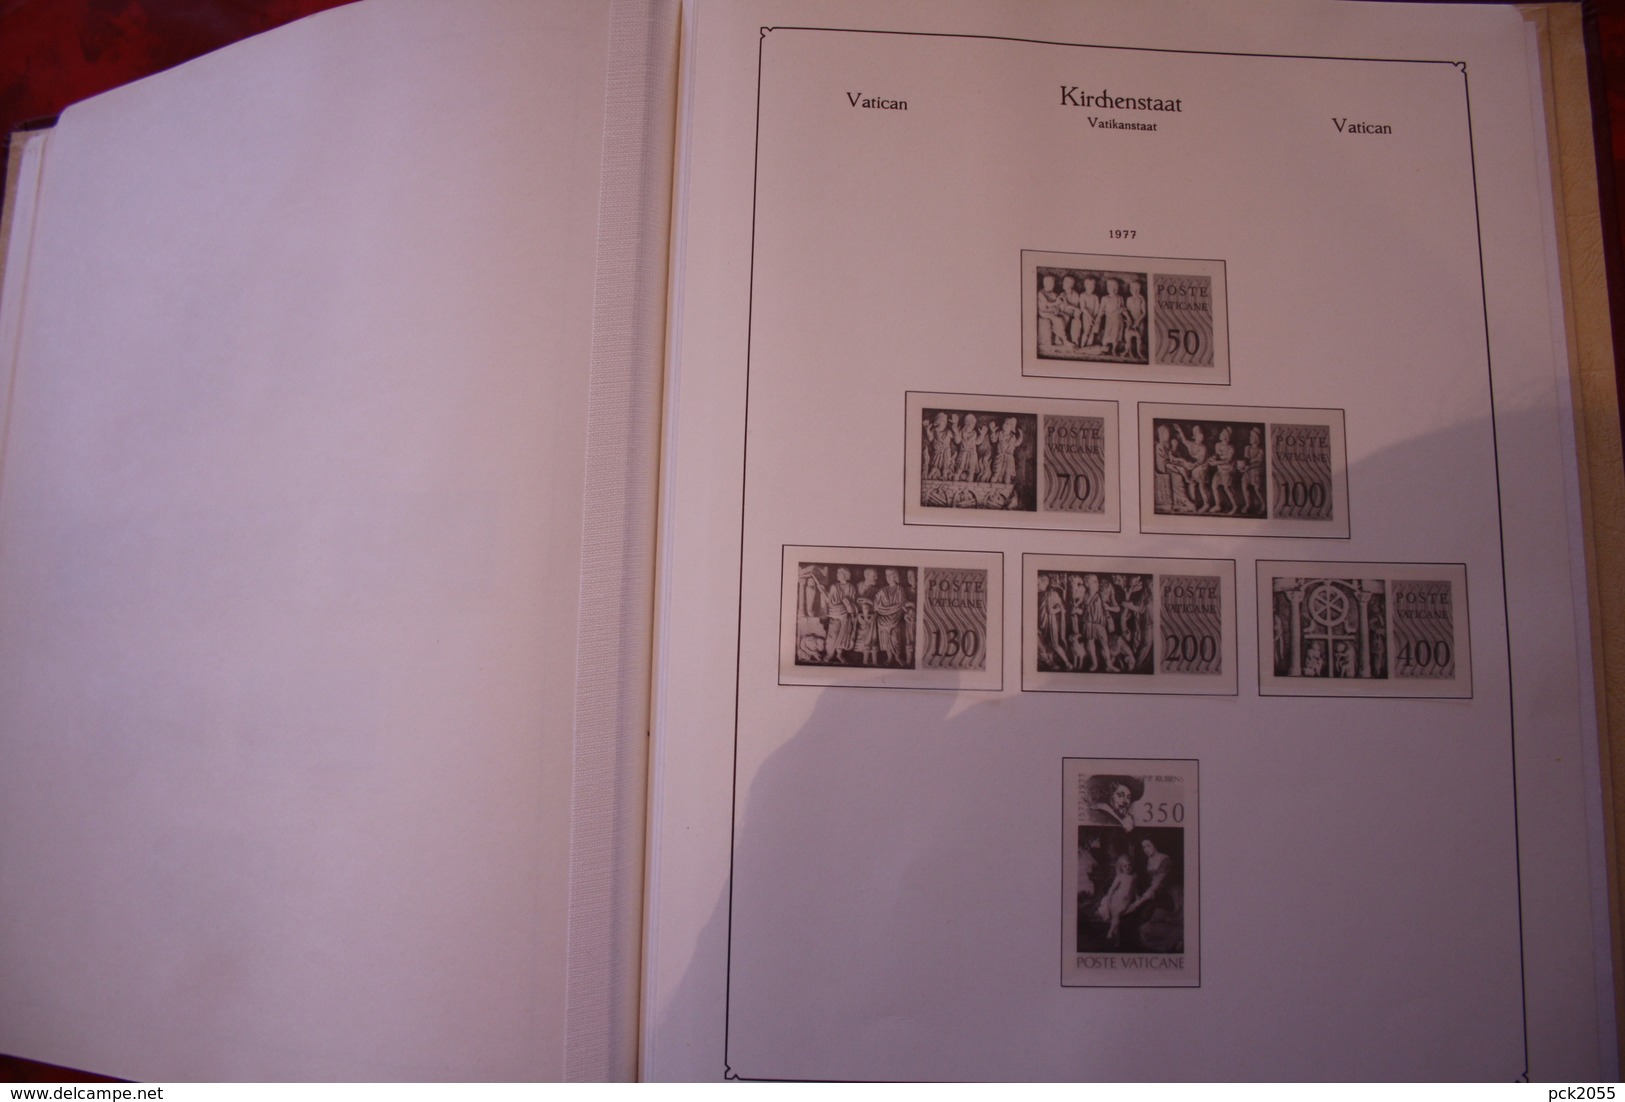 Ka-Be Vordruckalbum, Vatikan im Kemmbinder, Falzlos von 1959 - 1977 gut erhalten, Bilder ansehen. Günstige Versandkosten